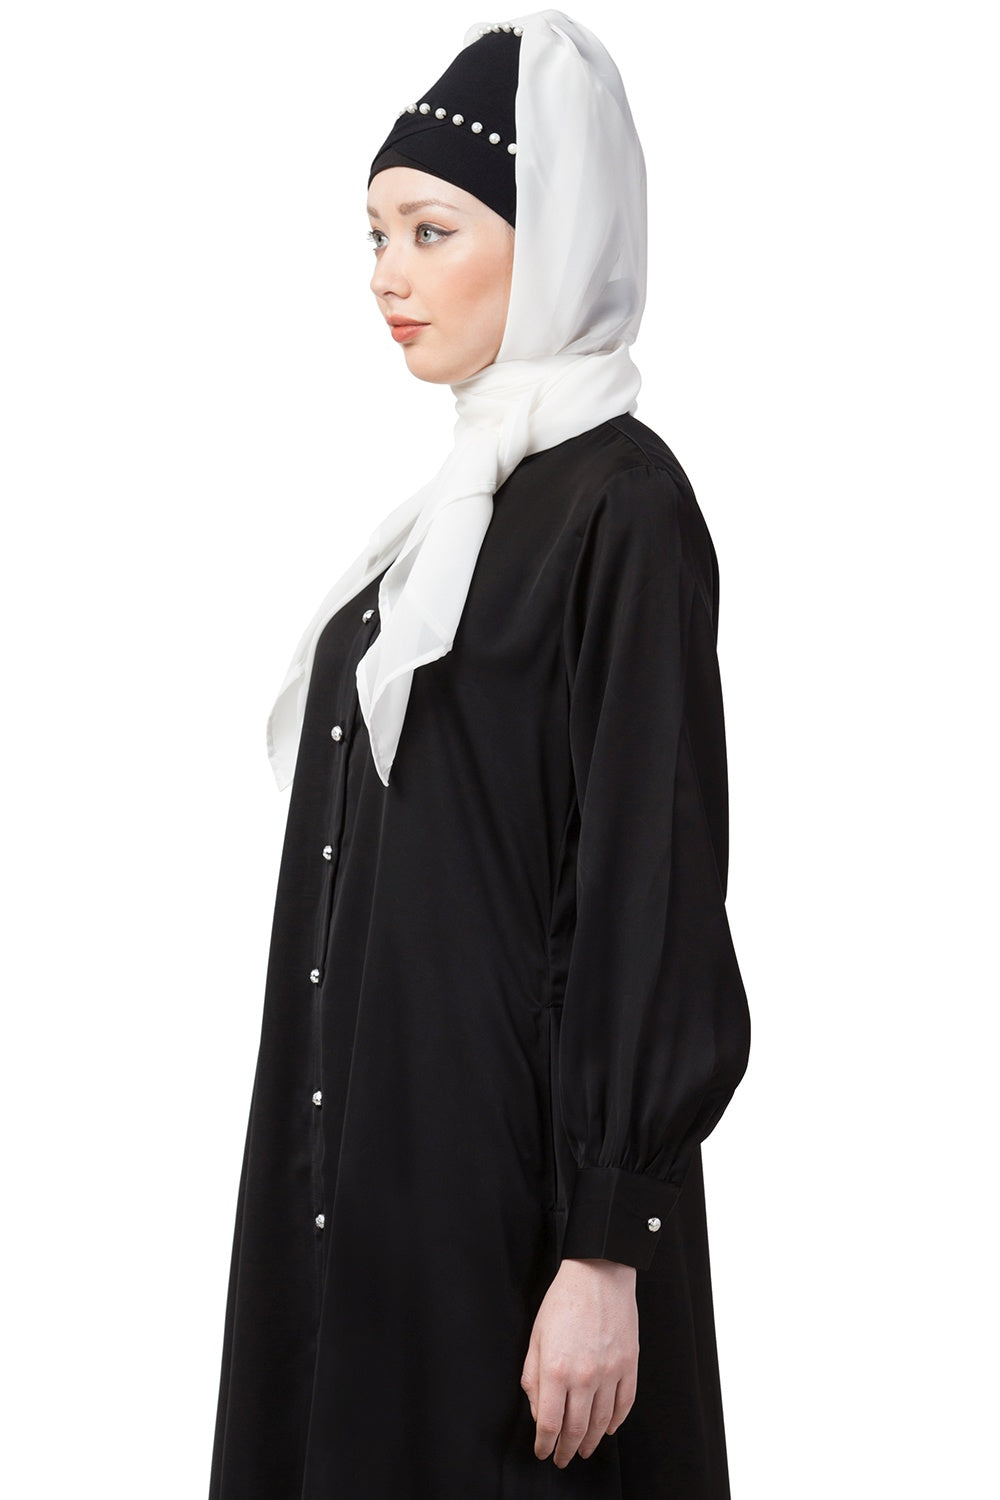 Islamic Hijab for Women